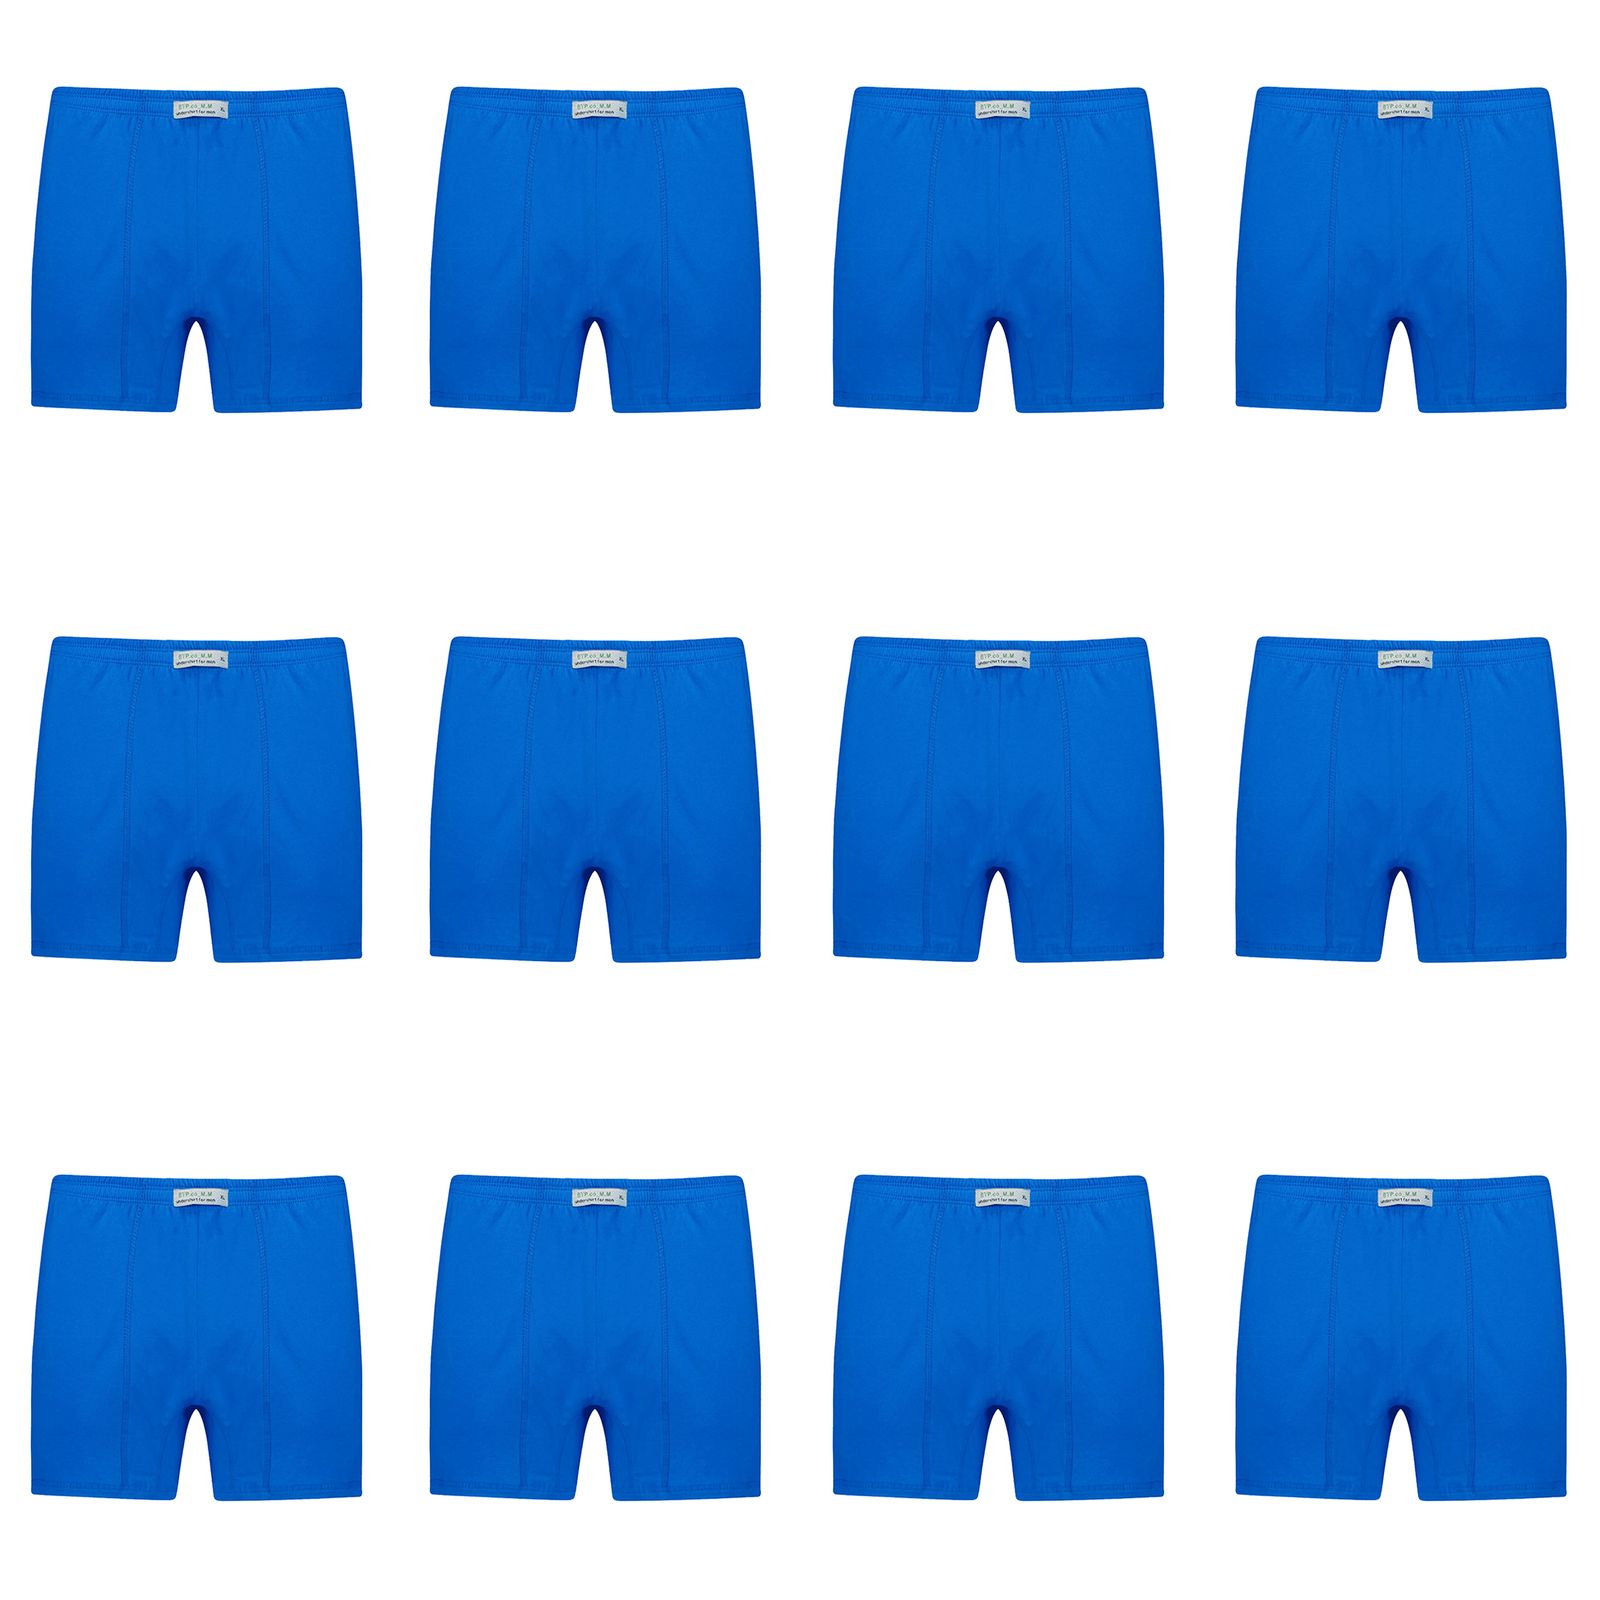 شورت پادار مردانه برهان تن پوش مدل 14-04 بسته 12 عددی رنگ آبی